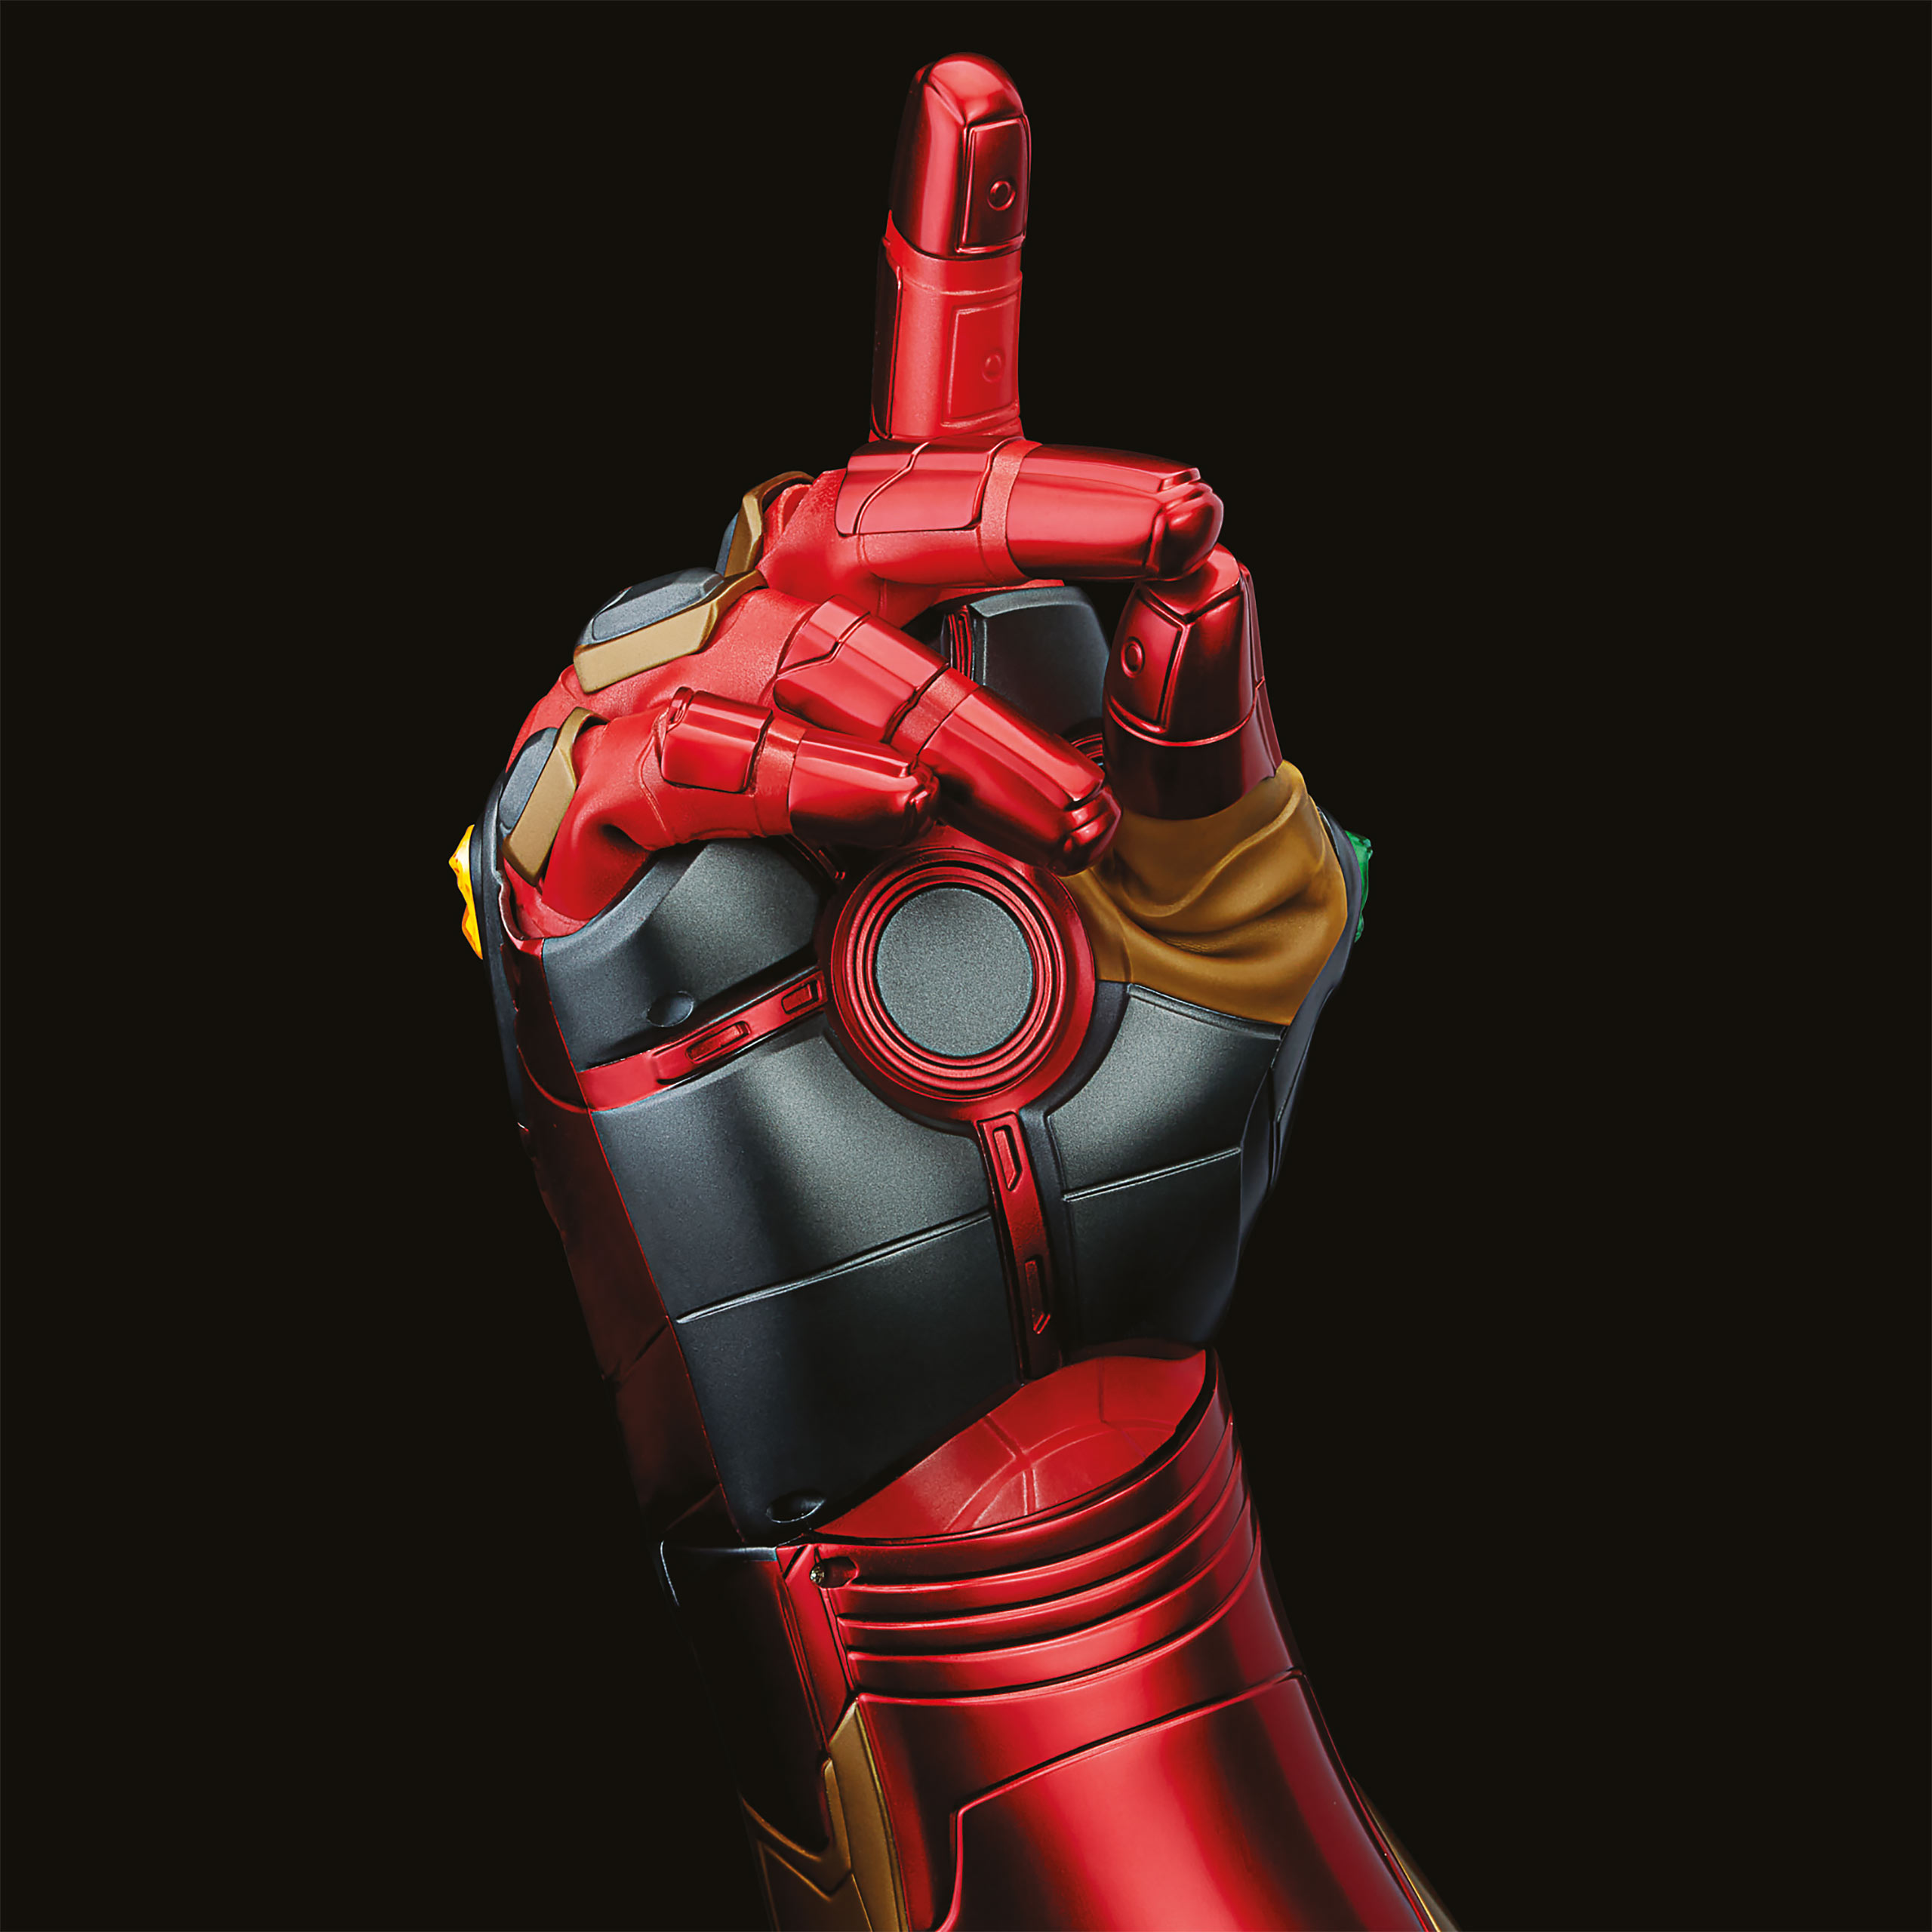 Avengers - Iron Man Gauntlet met licht en geluid